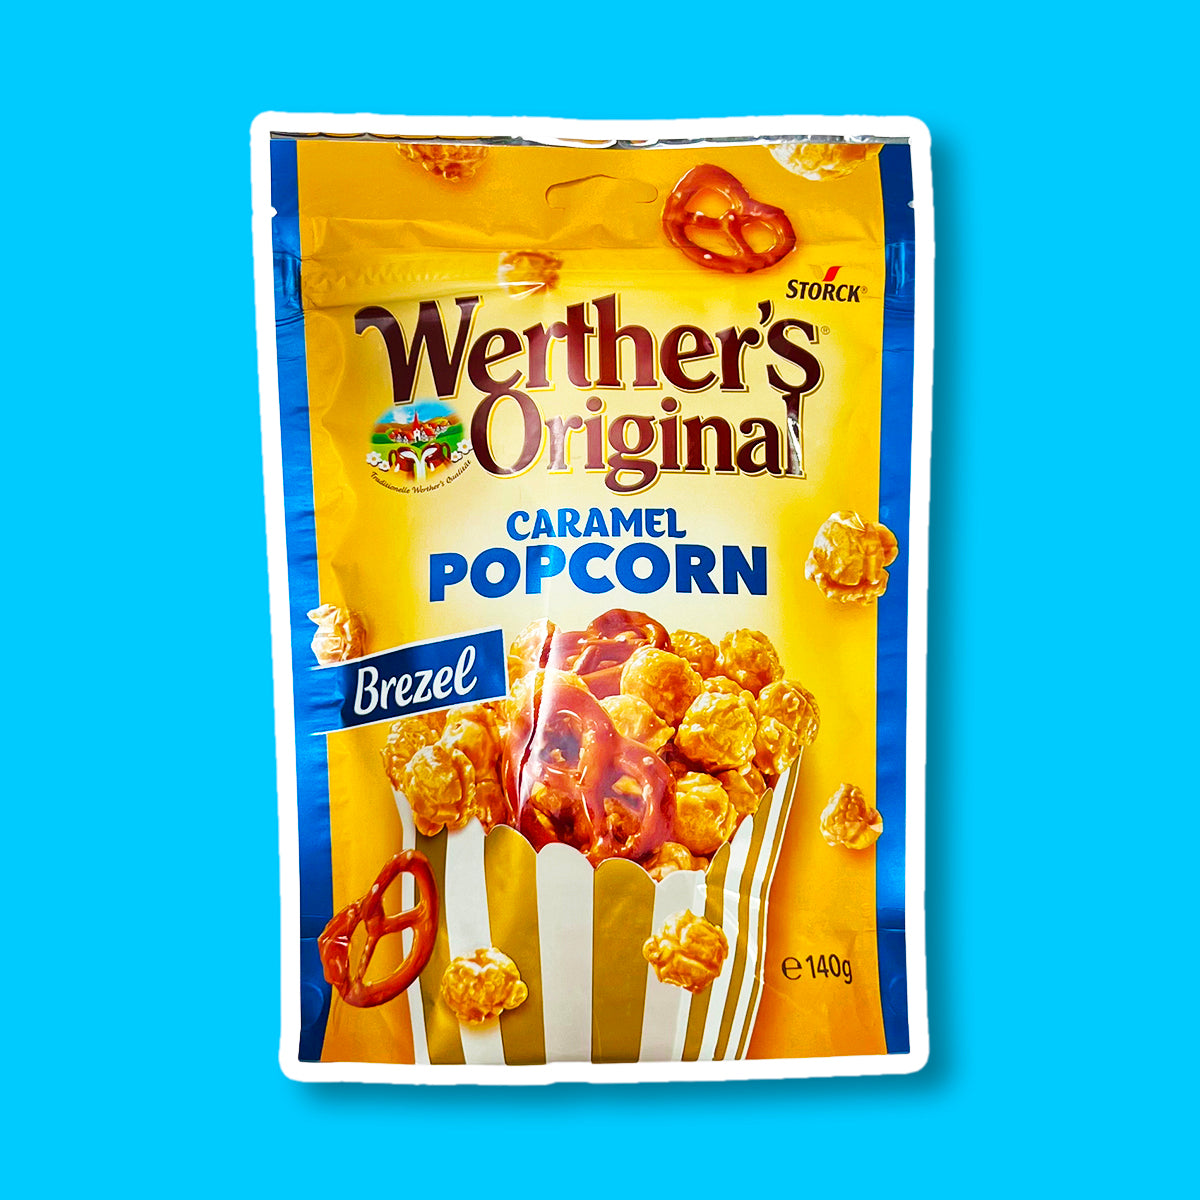 Un emballage de couleur orange et aux extrémités bleues, avec un paquet de popcorn au caramel et bretzel. Sur le côté gauche, il y une étiquette bleu « Brezel » le tout sur fond bleu